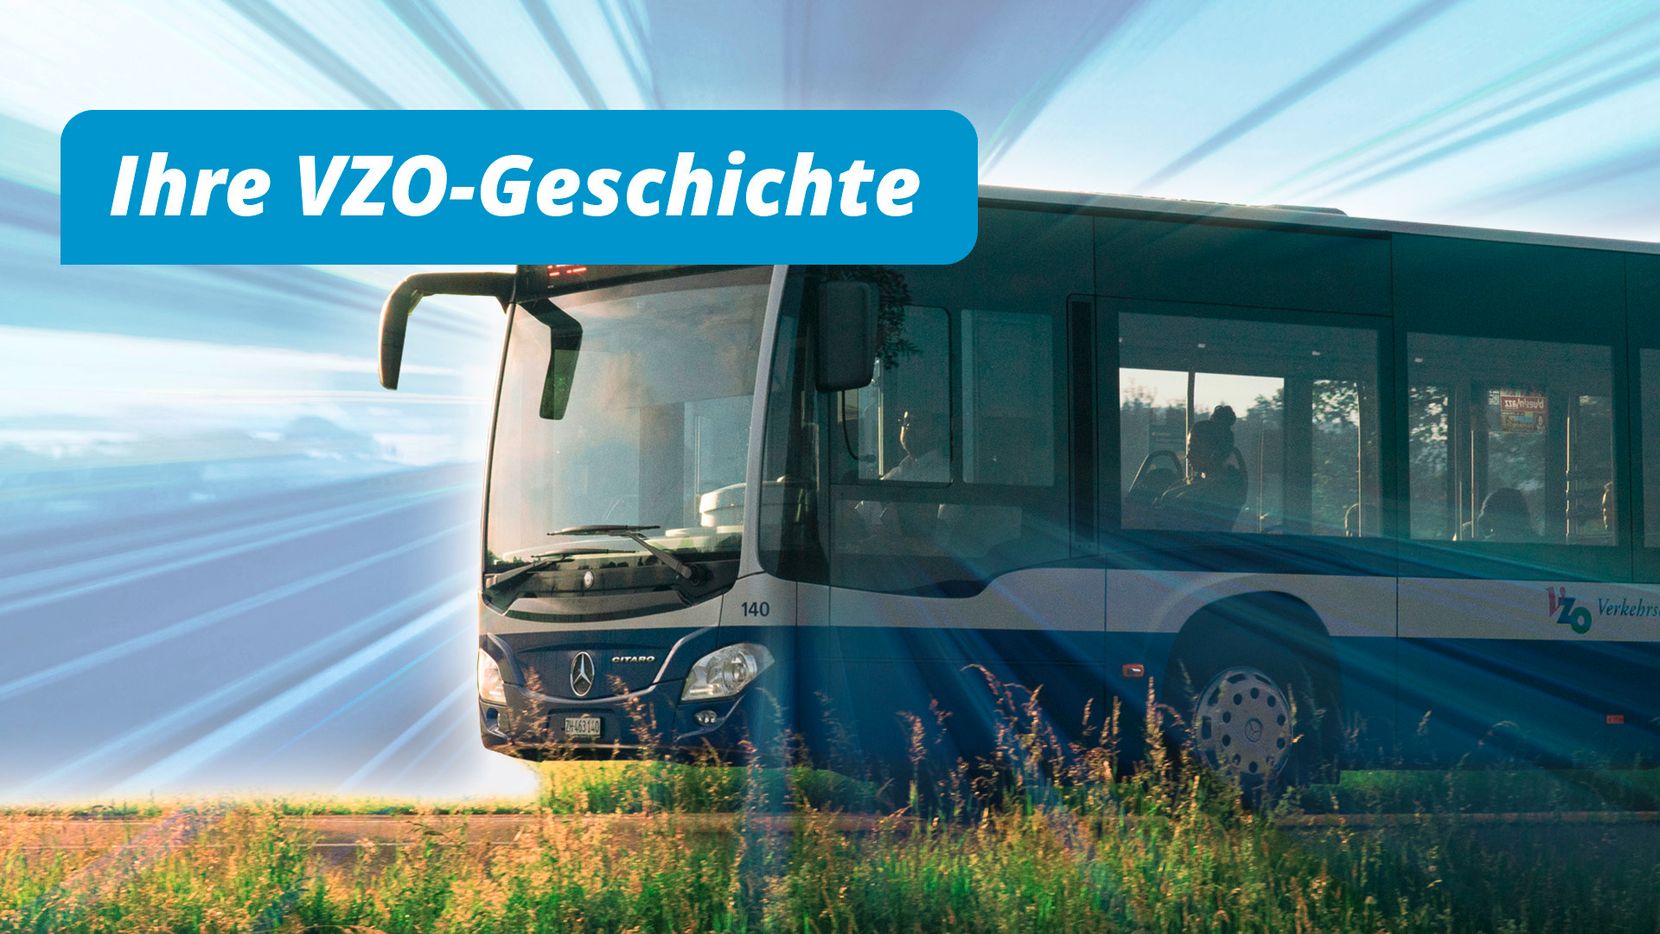 VZO Bus, VZO Geschichte für Jubiläum